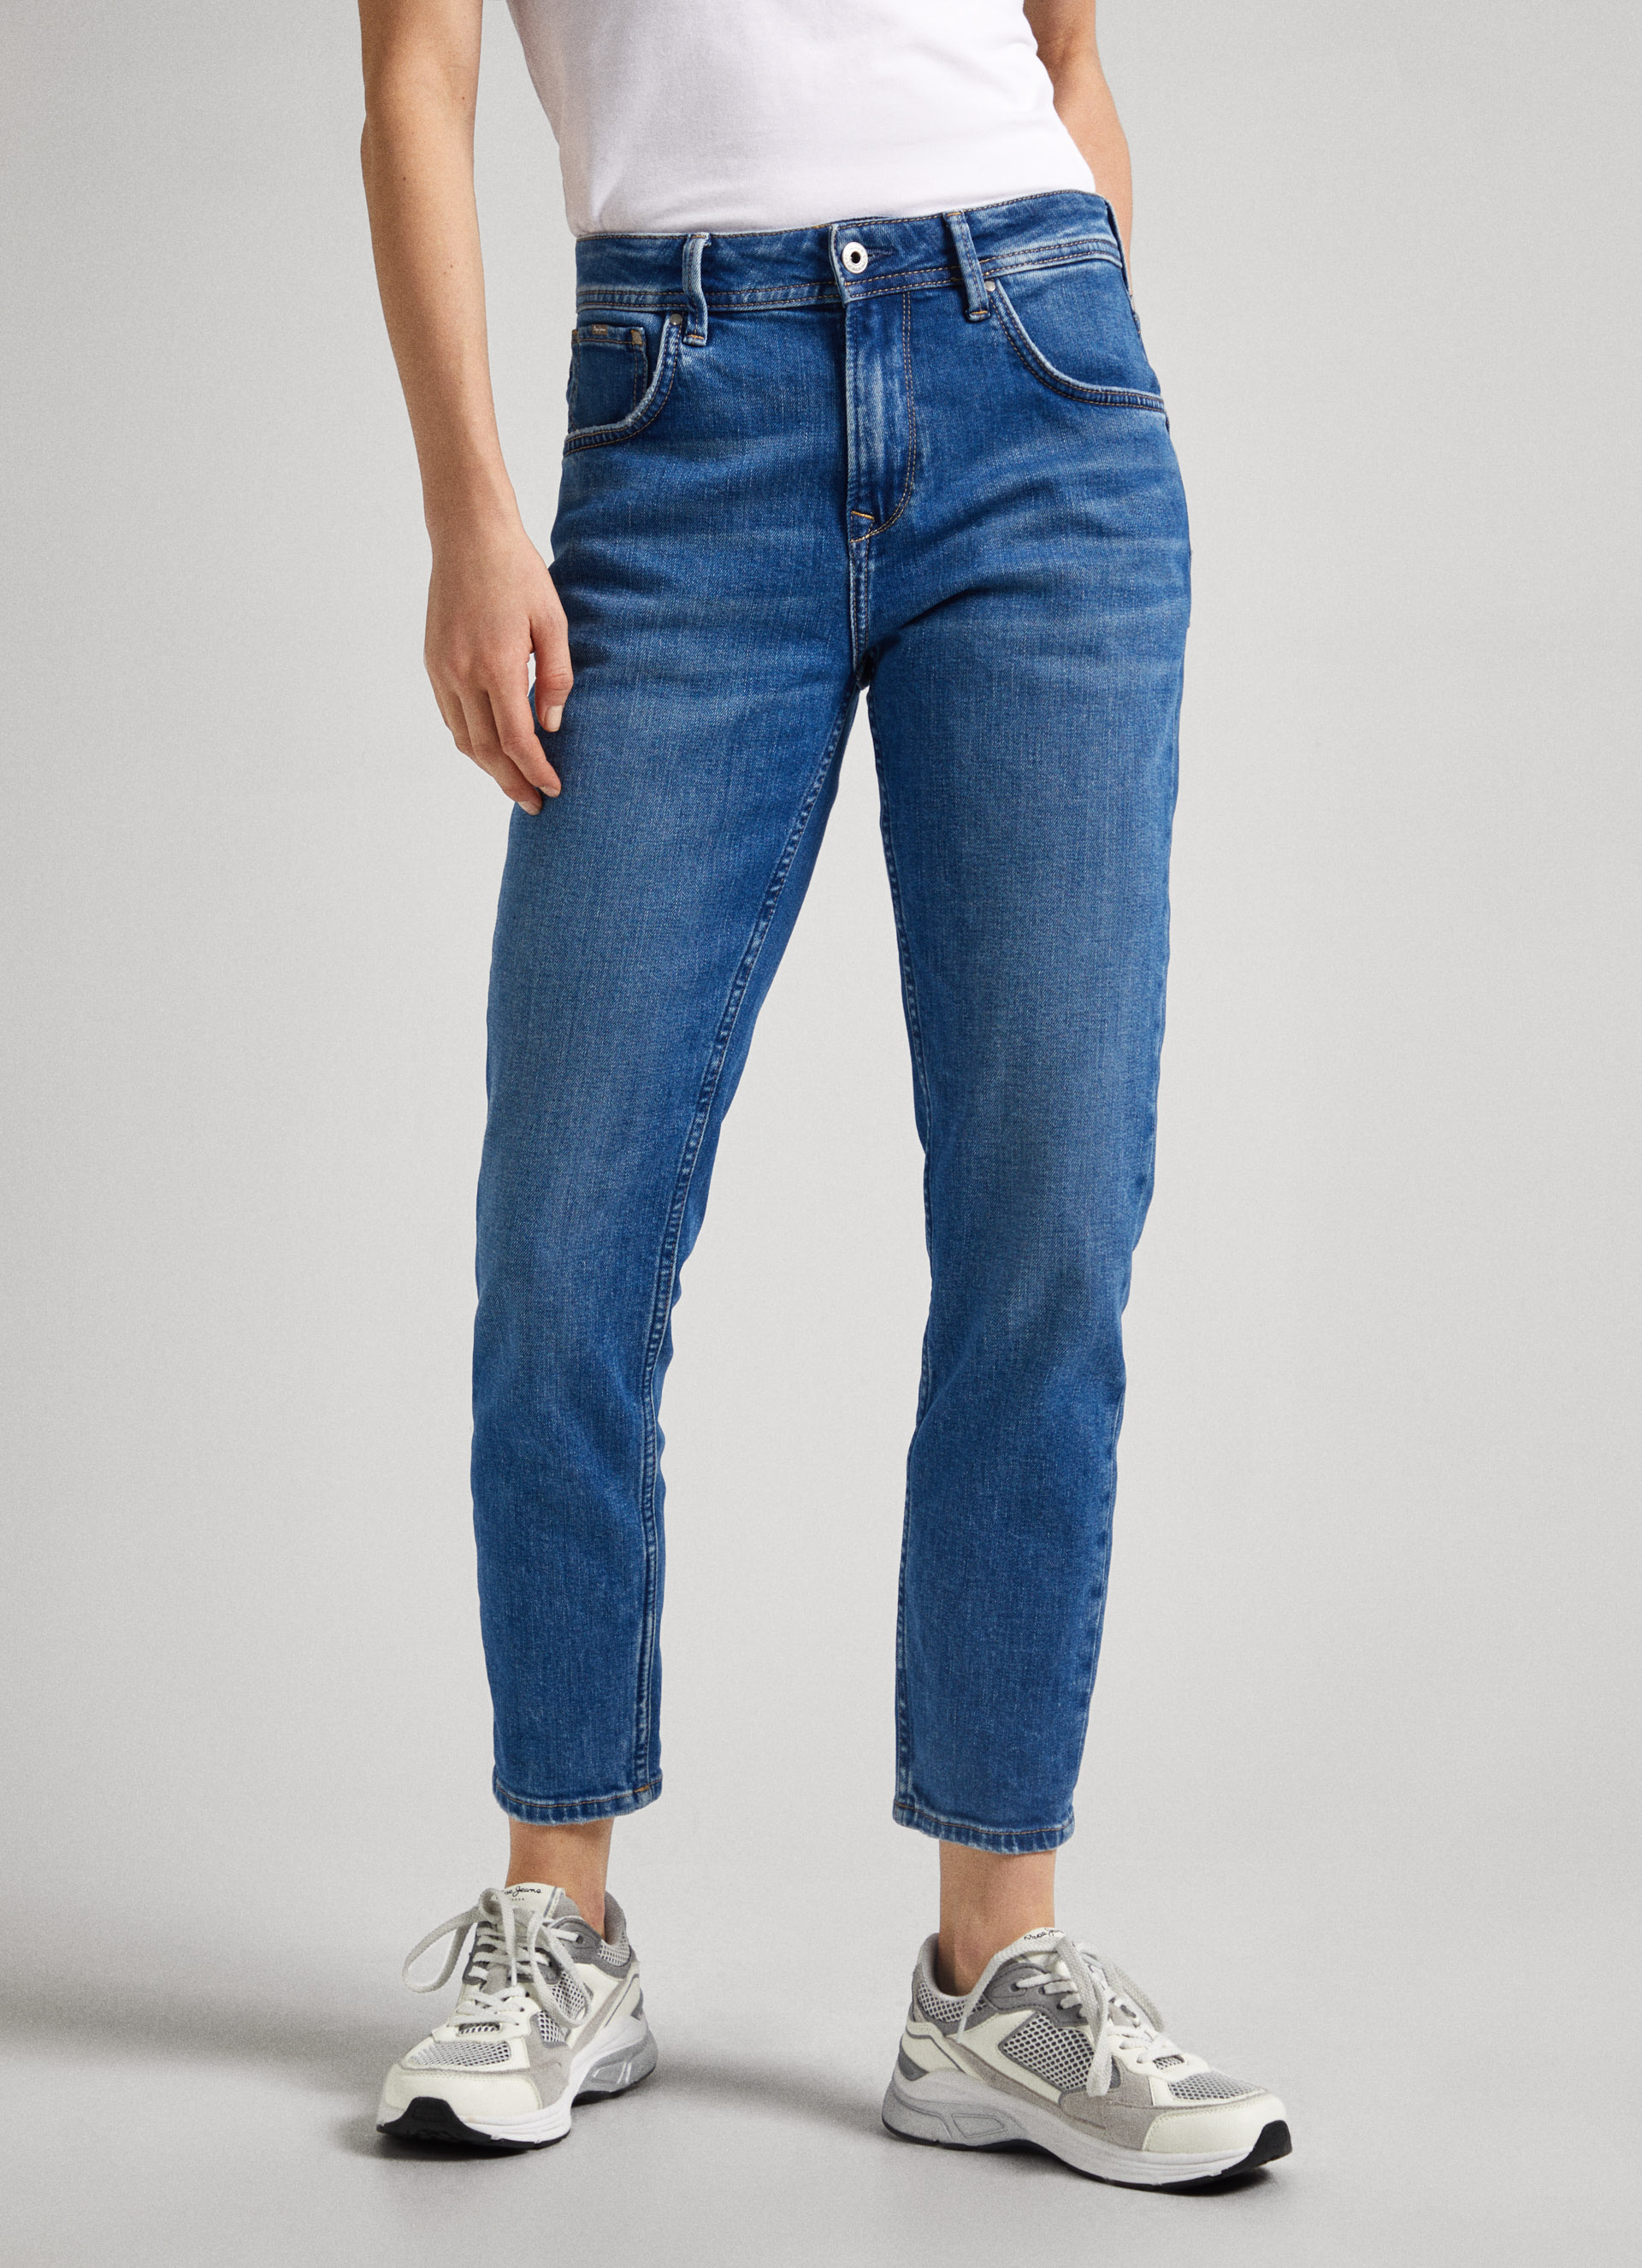 Women's Trends Jeans